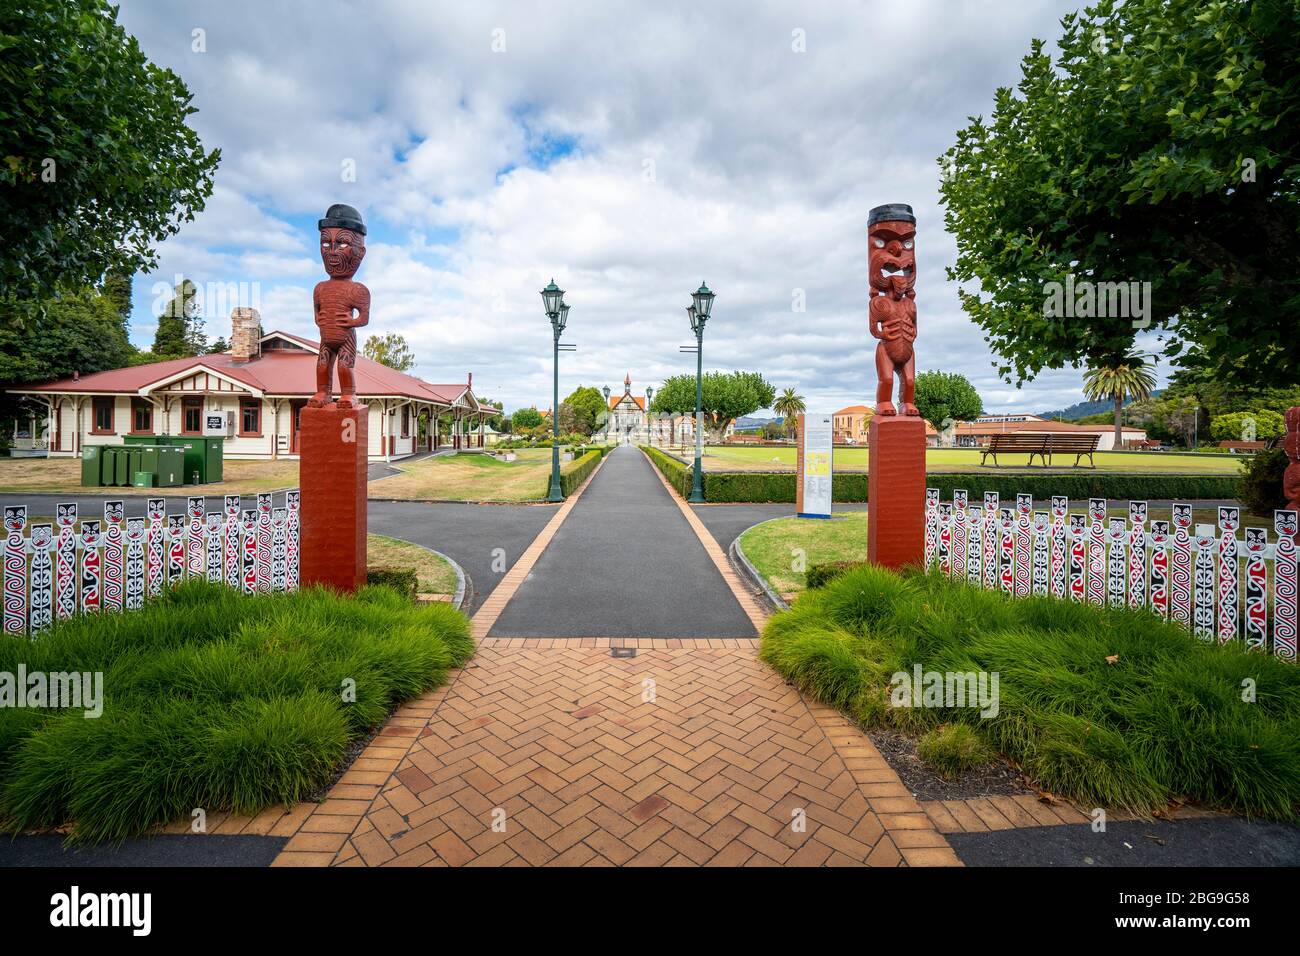 Tikis am Eingang zu Government Gardens, Rotorua, Neuseeland Stockfoto